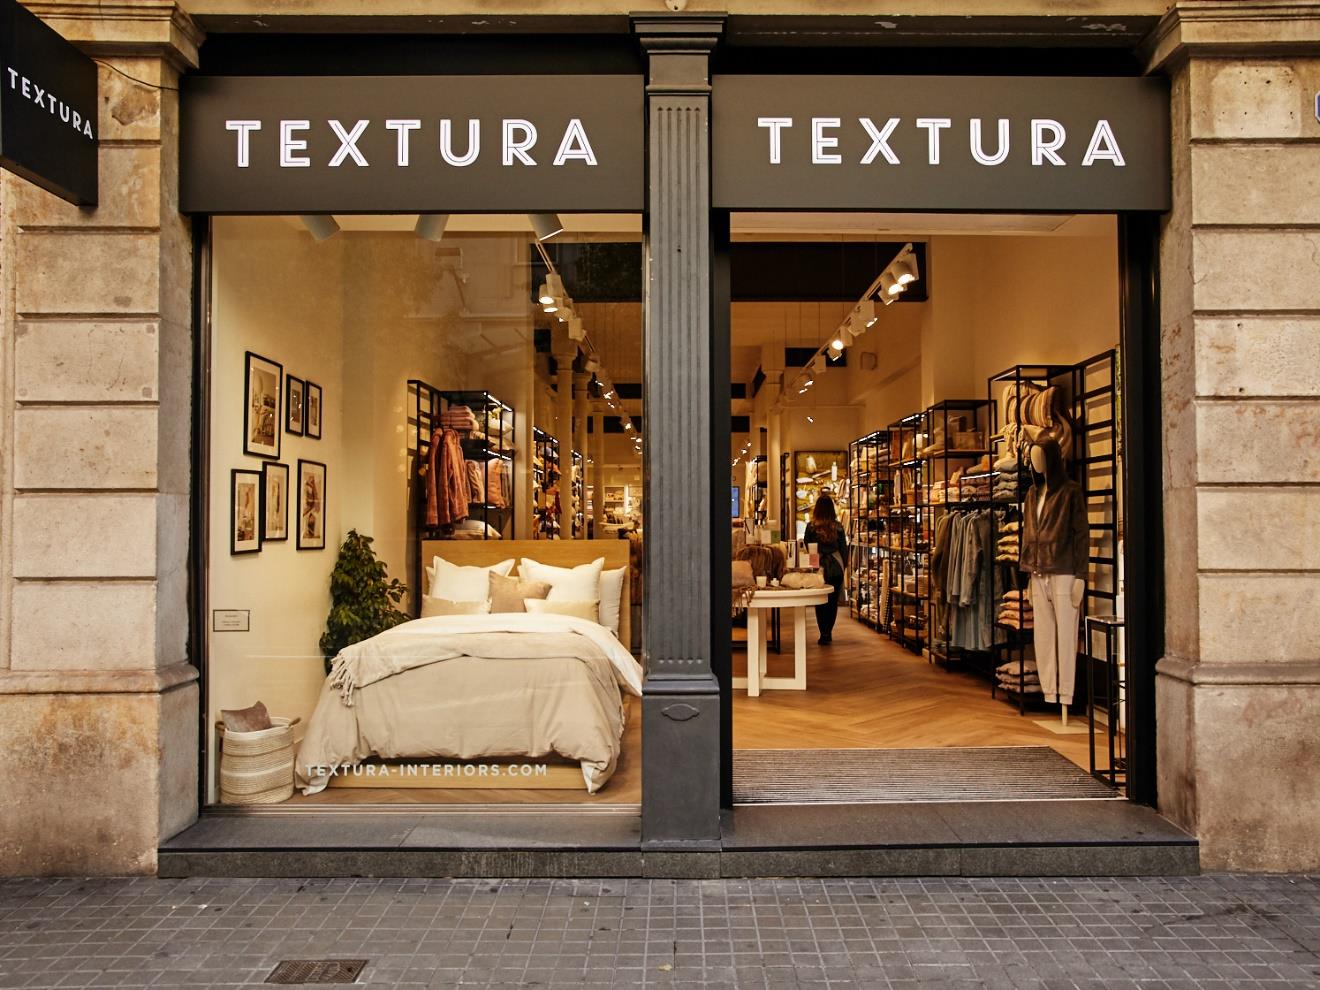 La nueva tienda estará en la calle Alfonso V de León. | L.N.C.